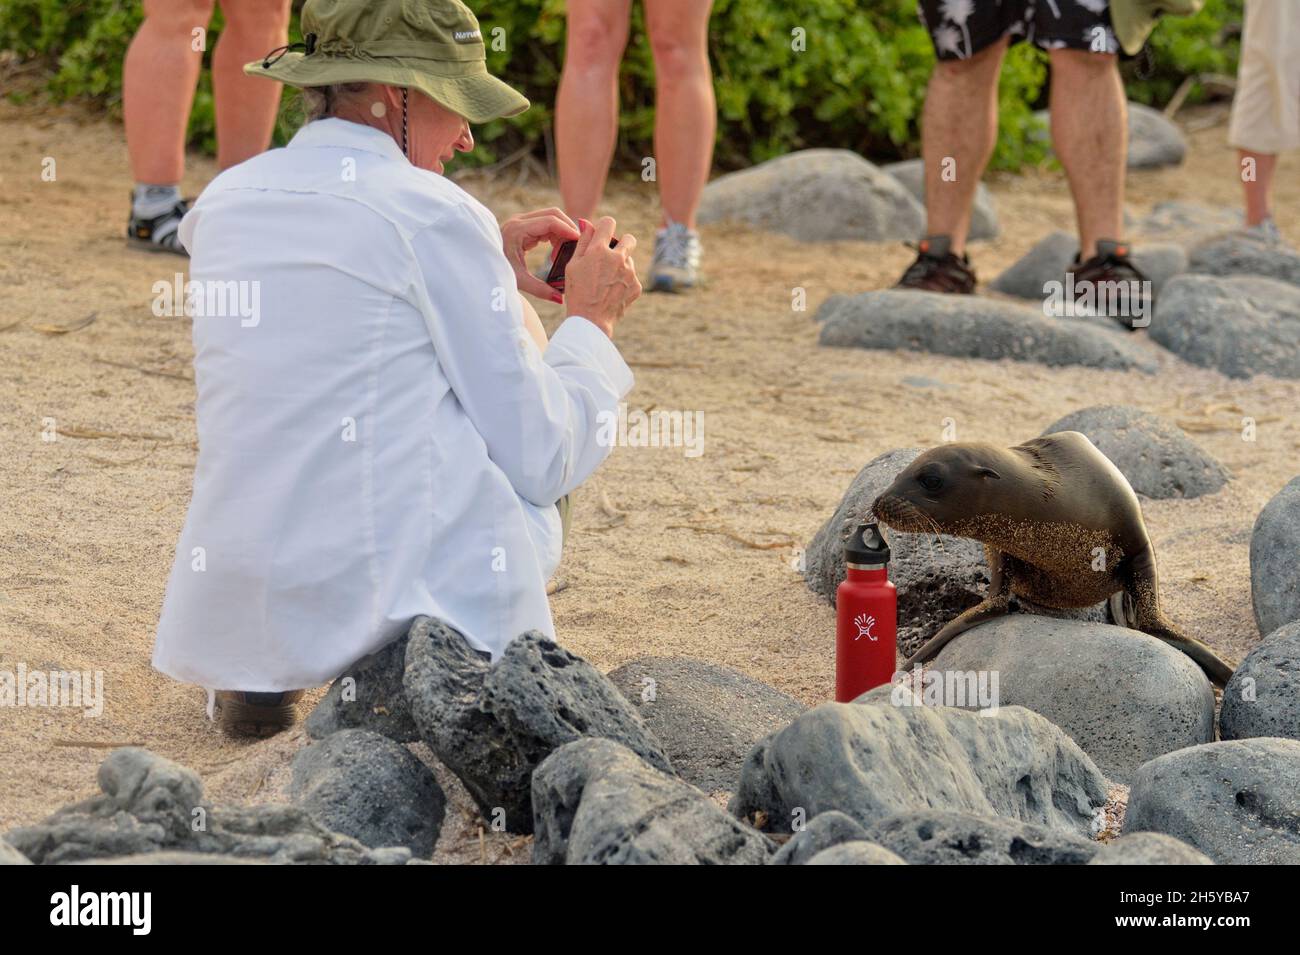 Curieux lion de mer étudiant la bouteille d'eau d'un touriste, parc national des îles Galapagos, San Cristobal, île de Lobos, Equateur Banque D'Images